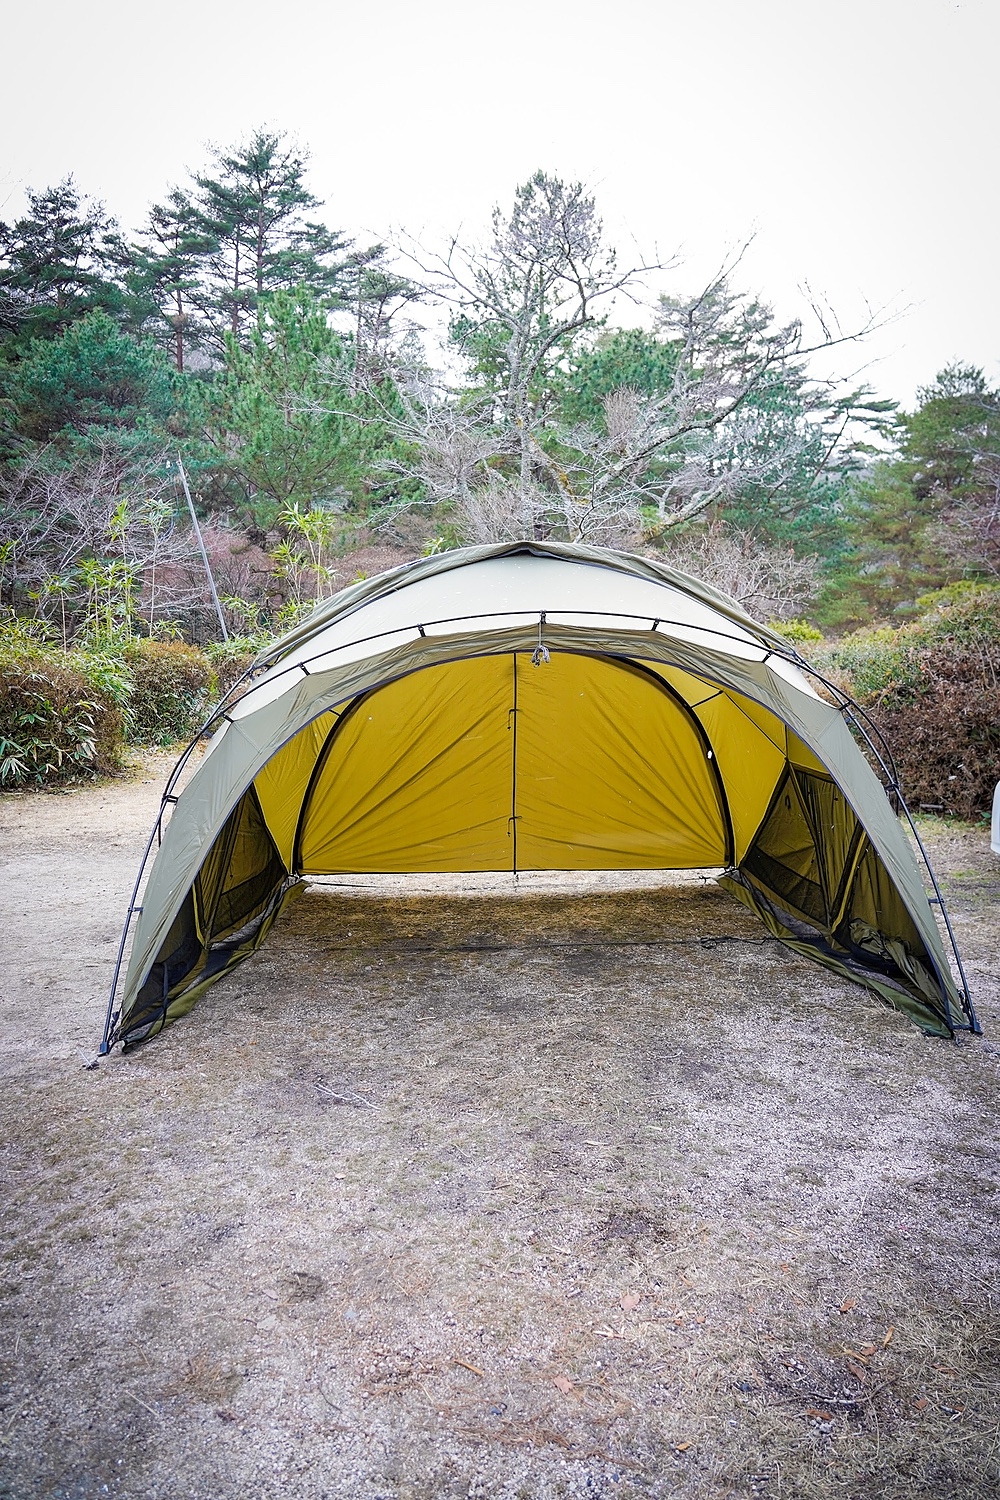 ドキキャンプg2000用拡張テント用グランドシート - テント・タープ